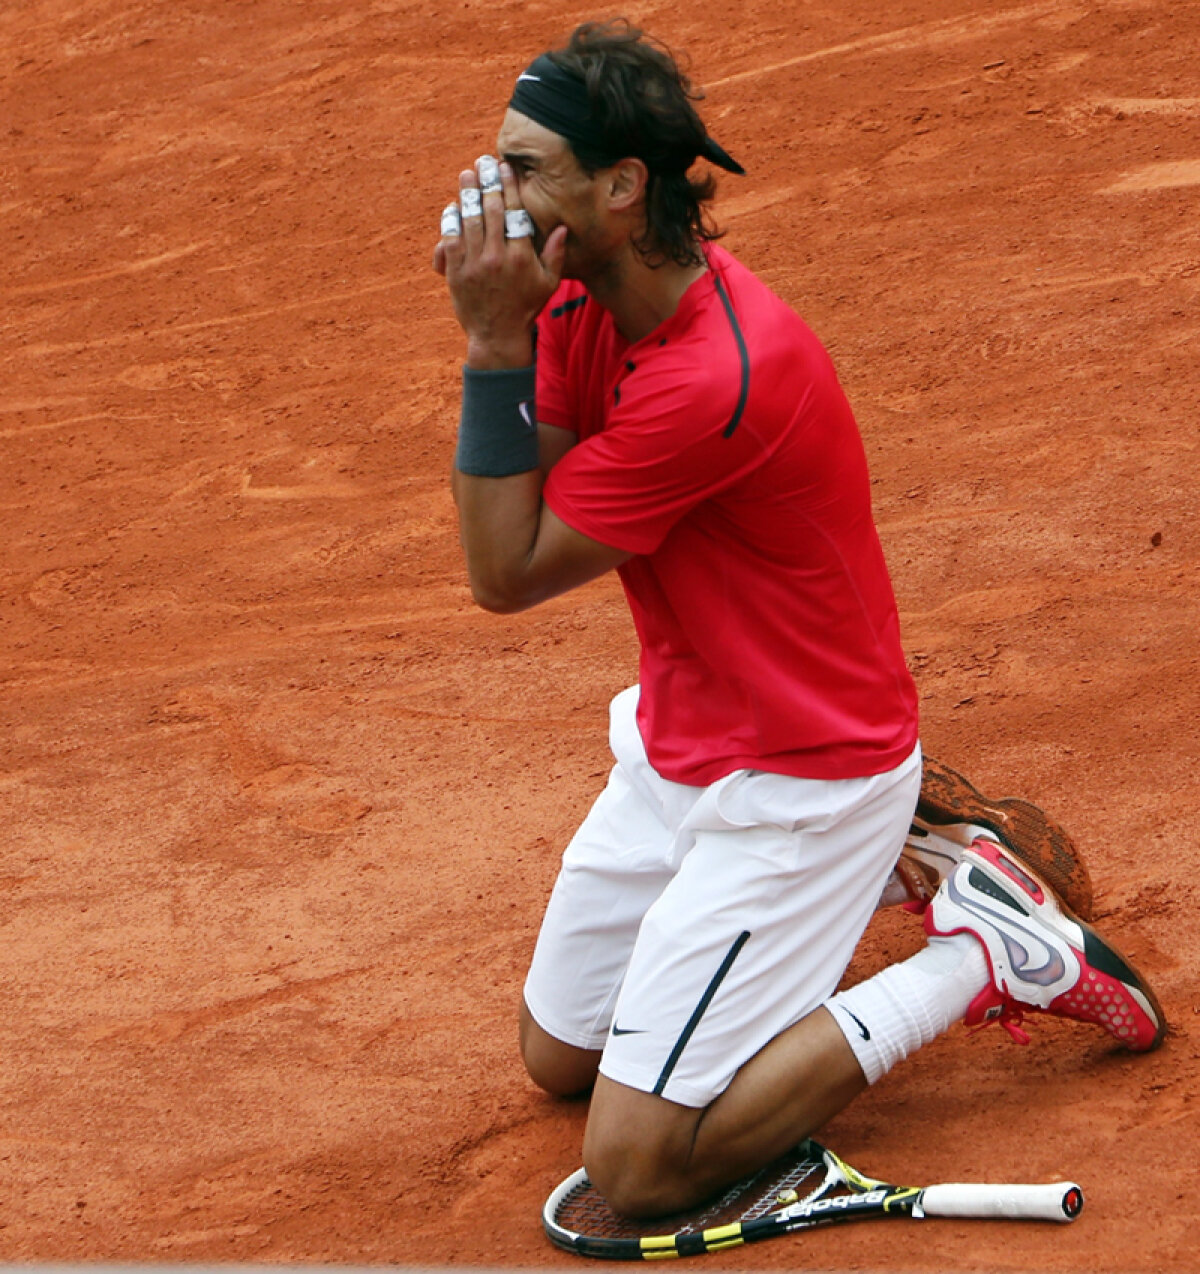 Istorii cu Rafa » Nadal îşi povesteşte amintirile din tenis în volumul "Rafa - povestea mea"